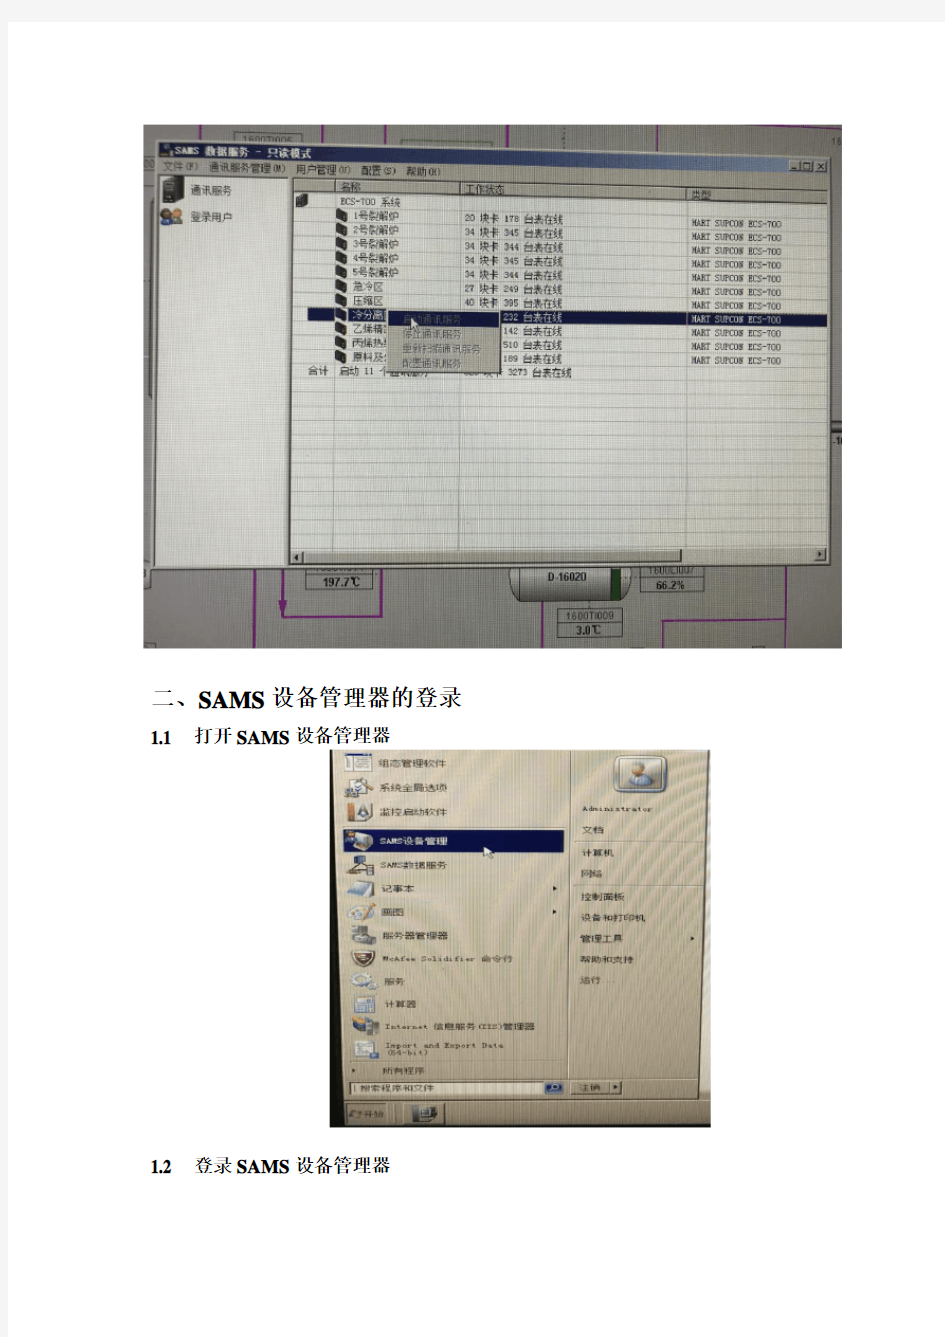 SAMS设备管理器使用在线HART